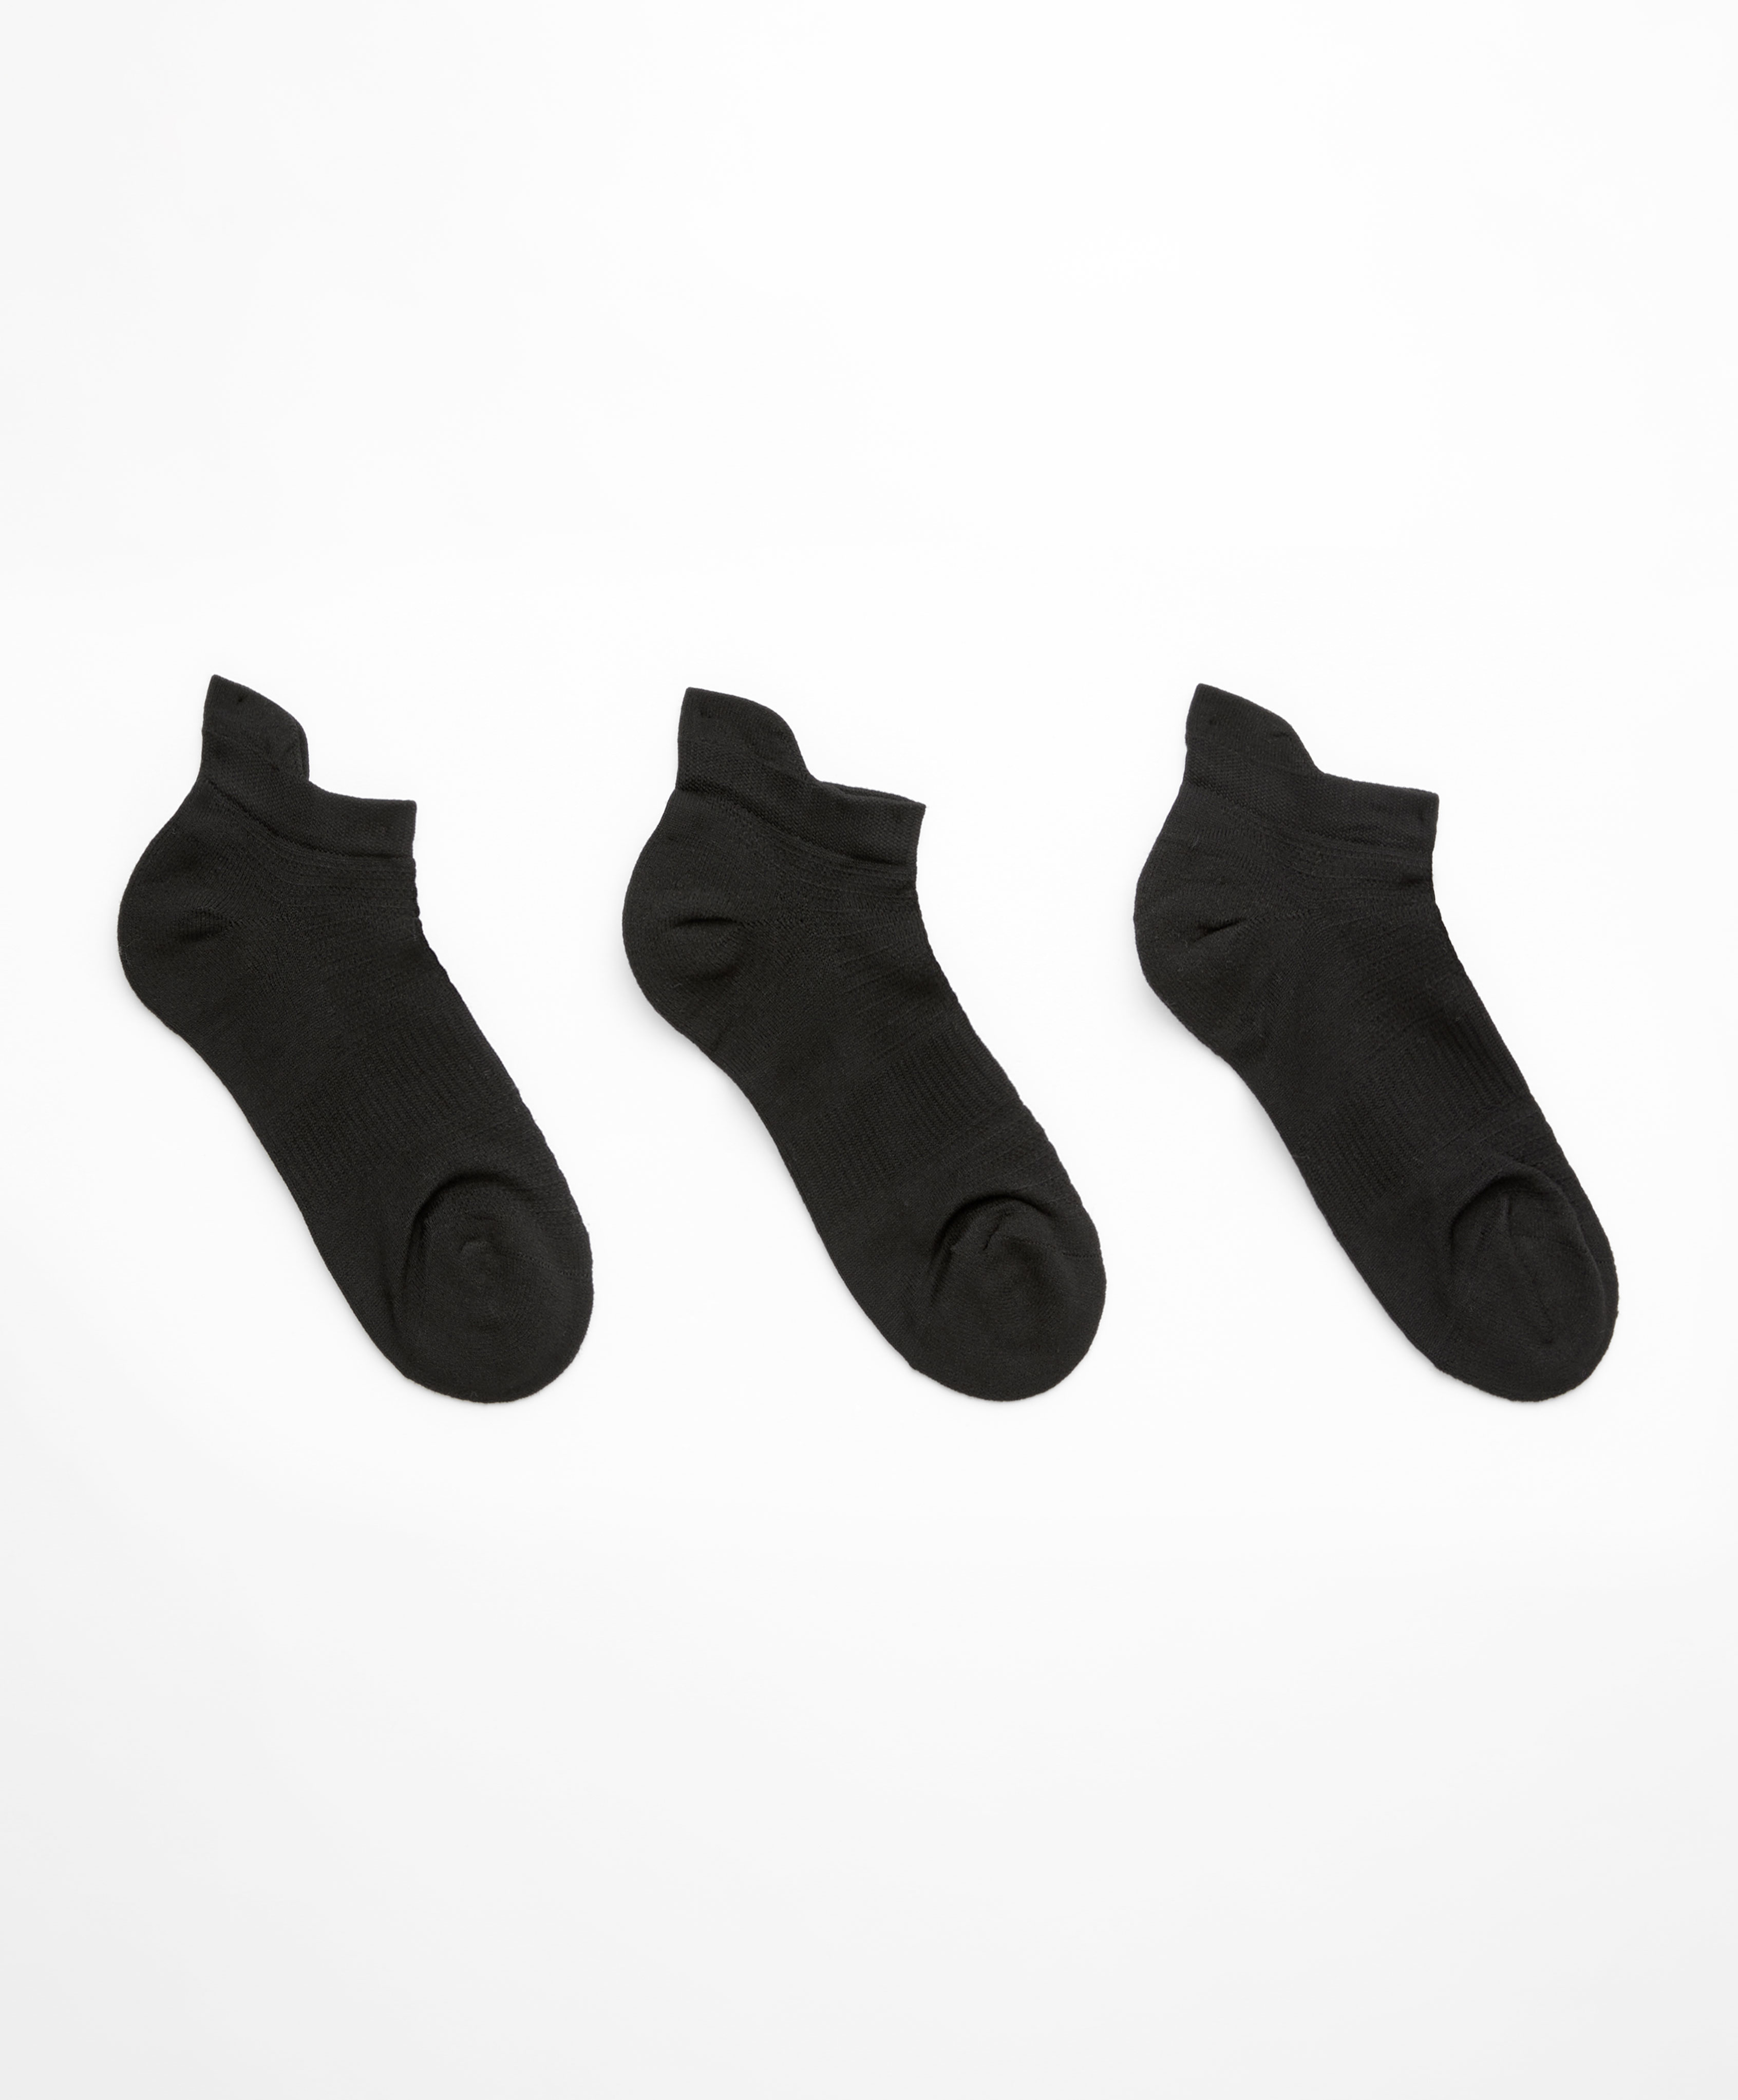 3 ζευγάρια αθλητικές κάλτσες sneaker από πολυαμίδιο